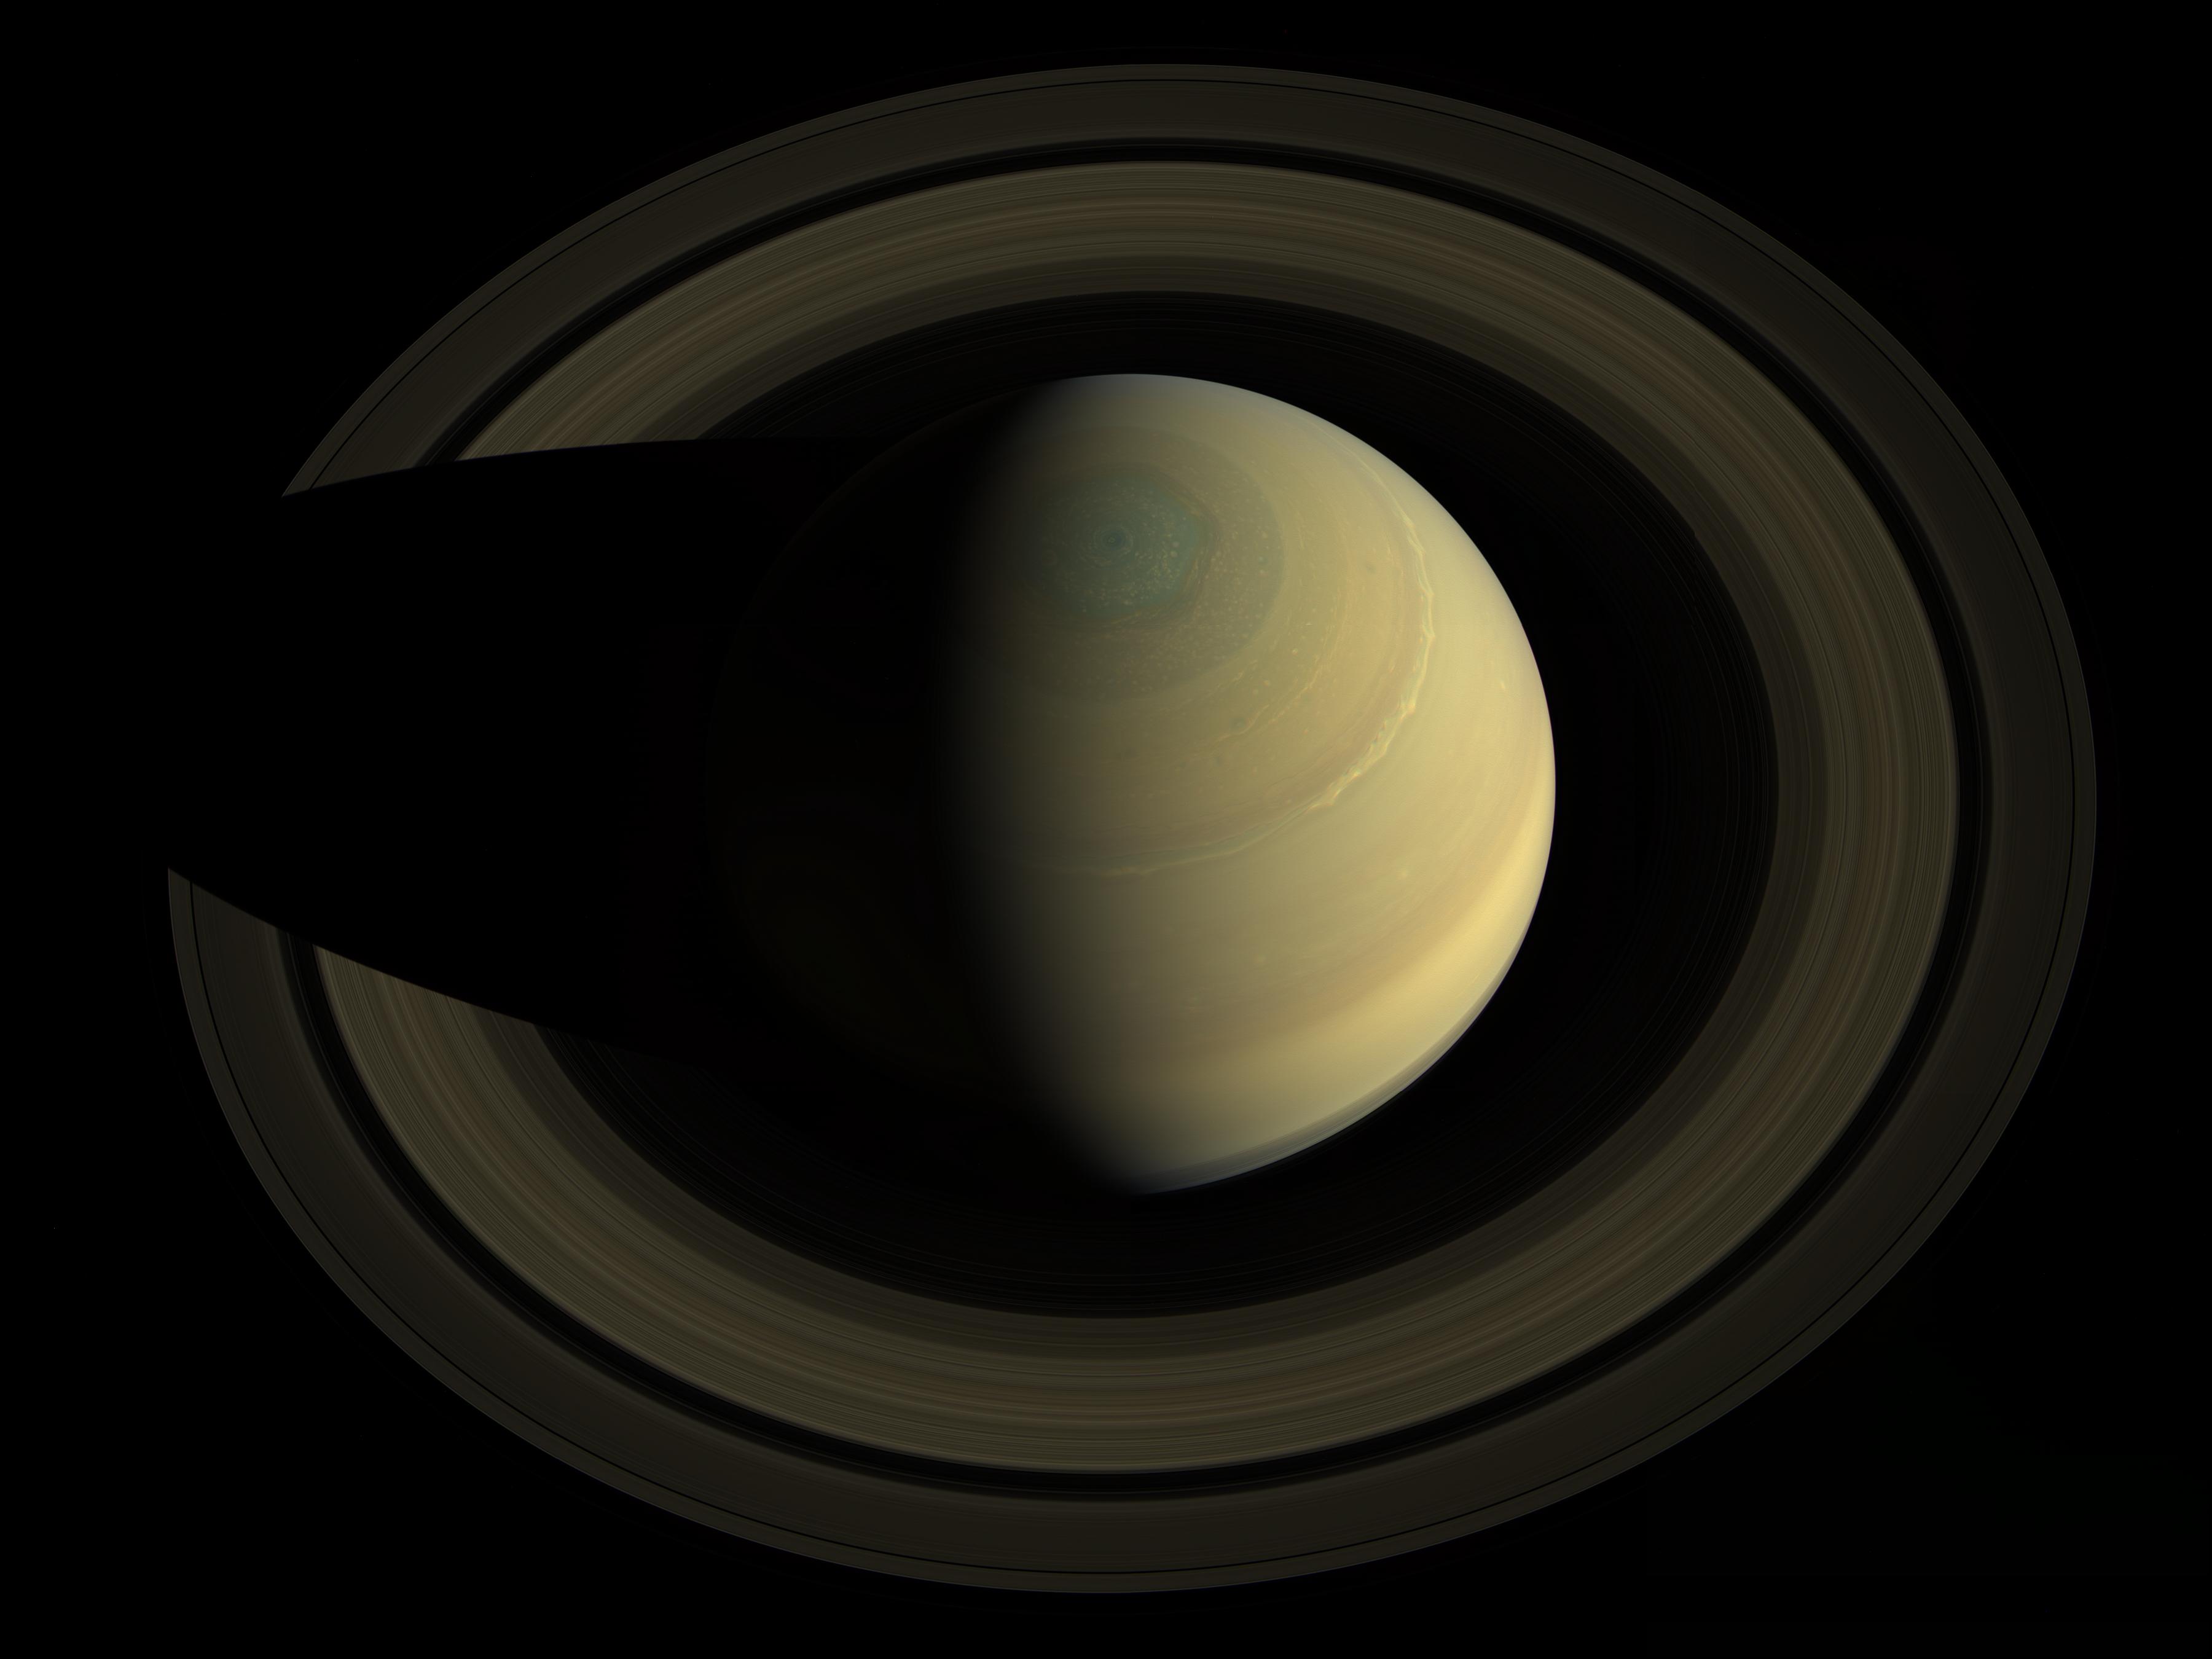 Szemelvények a Cassini küldetés eredményeiből